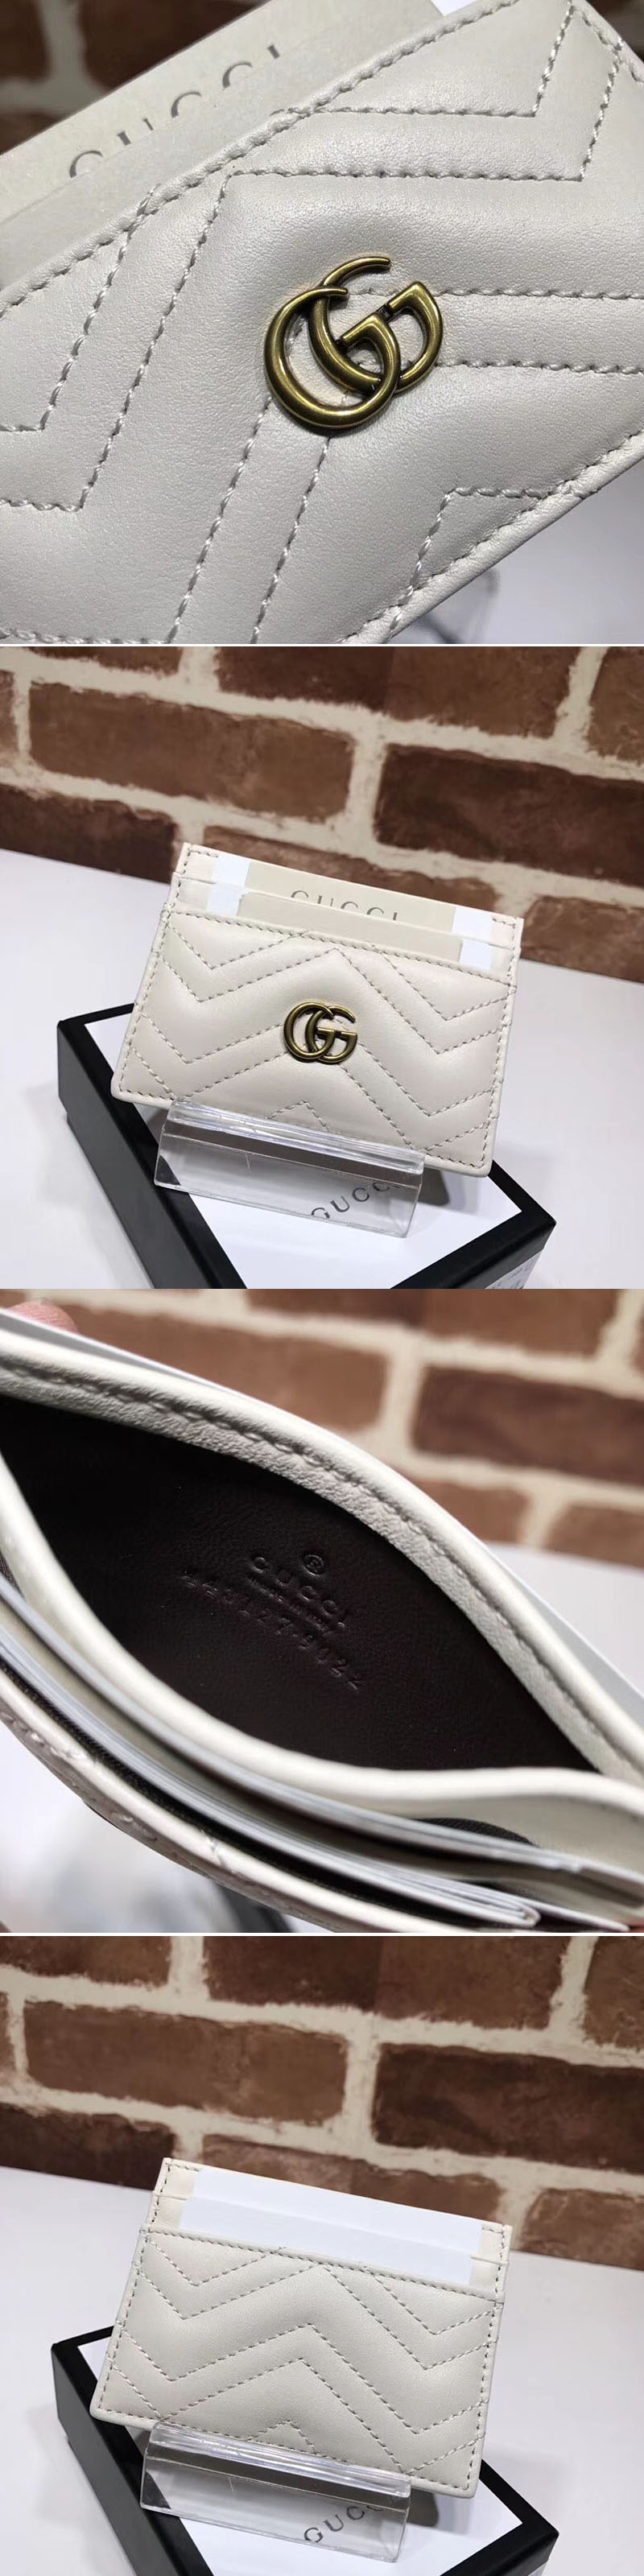 Replica Gucci 443127 GG Marmont Original Matelasse Leather Card Case White